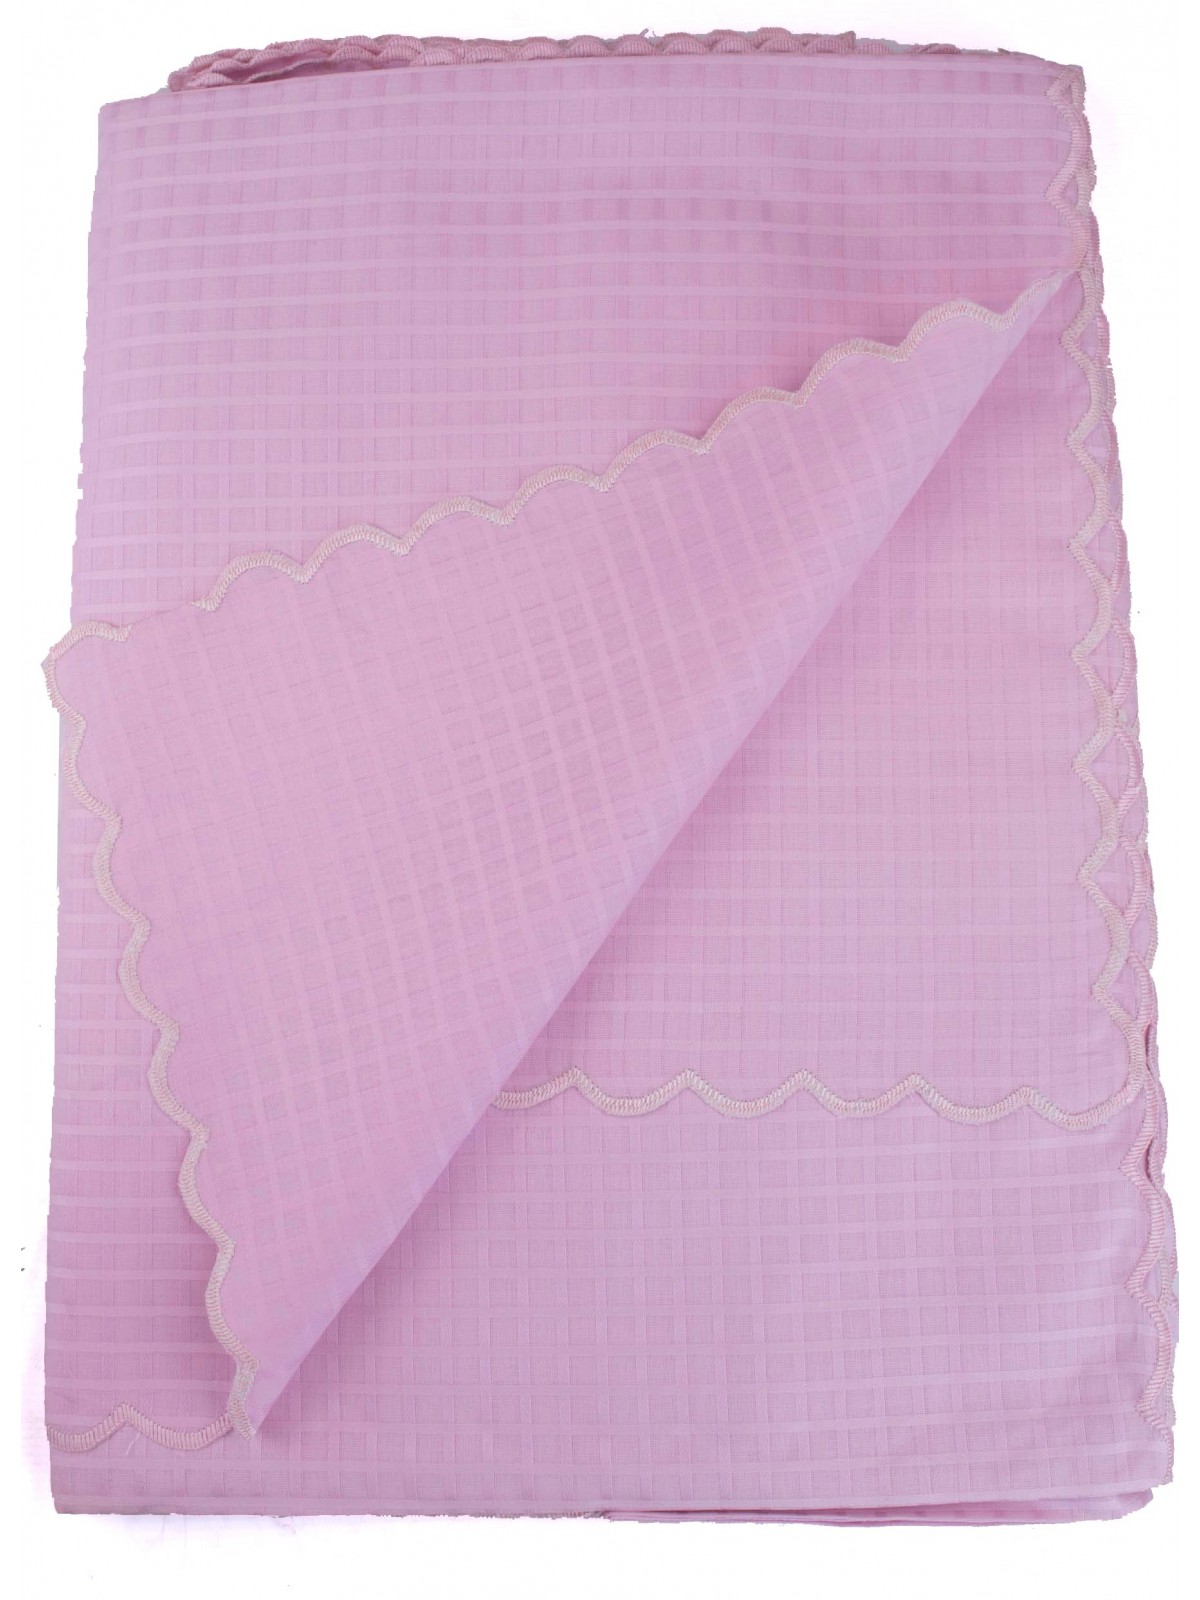 Mantel redondo x8 Cuadrados festoneados de organza rosa brillante diam180 +8 Servilletas 8071